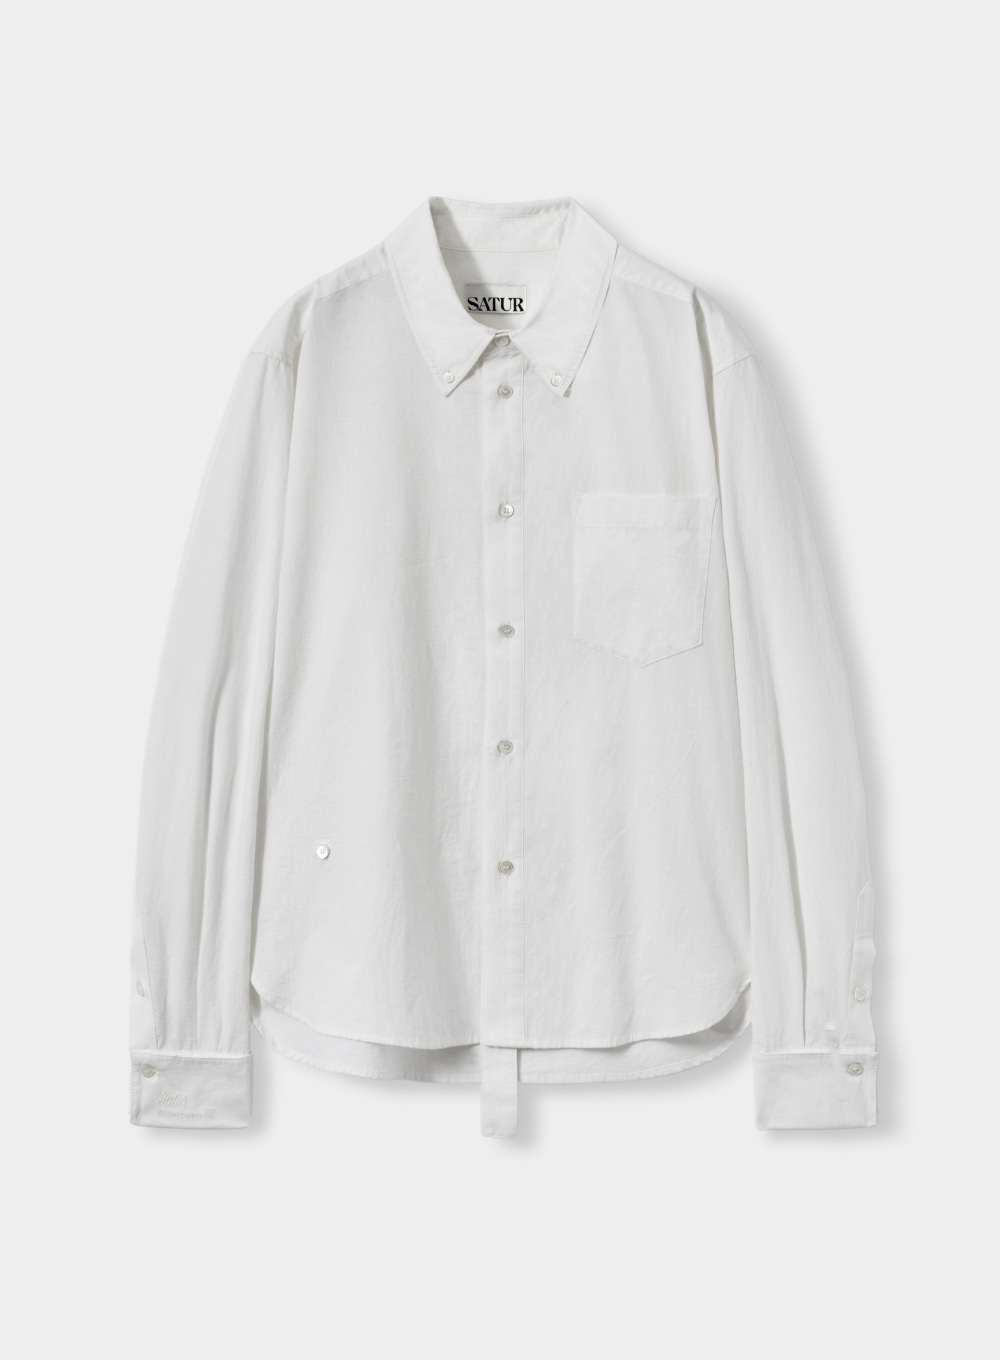 [10월 11일 예약배송] Hills Tie Shirts - Paper White